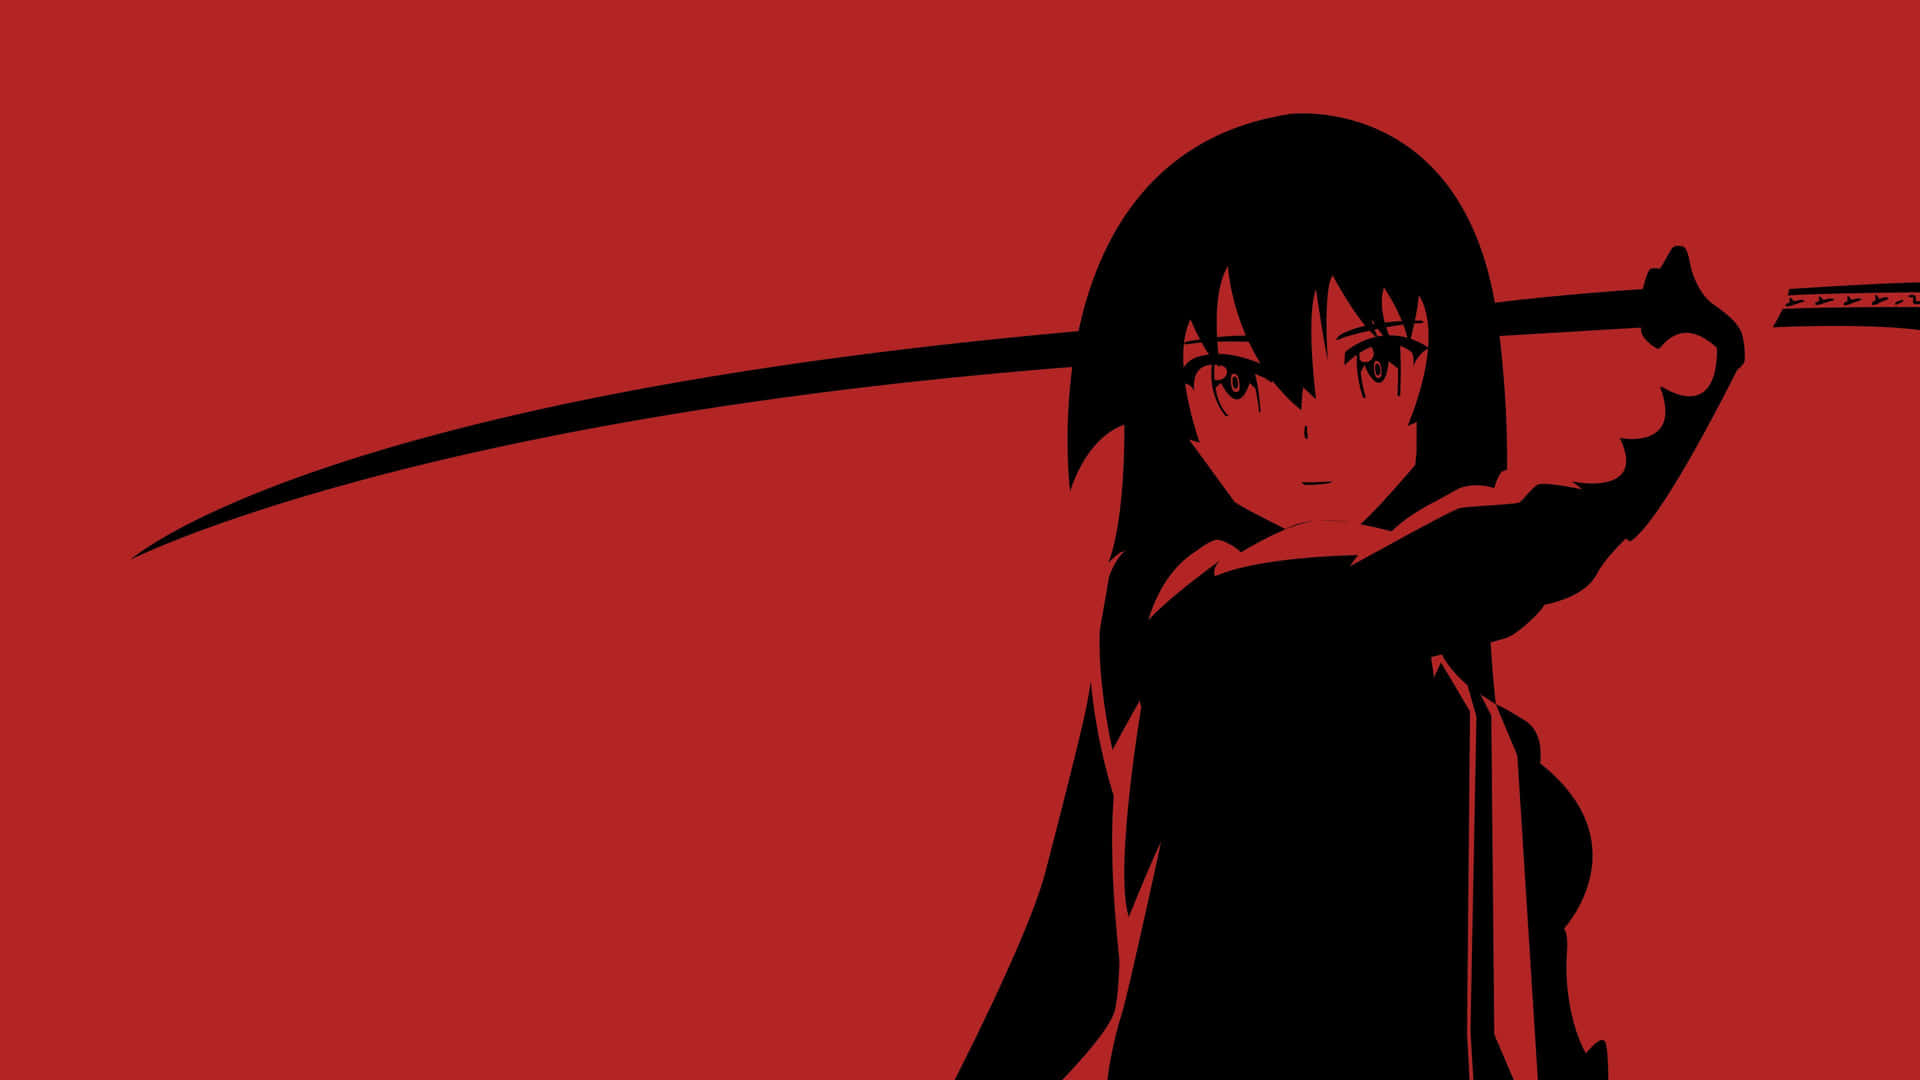 Anime illustration med slående rød og sort farver. Wallpaper